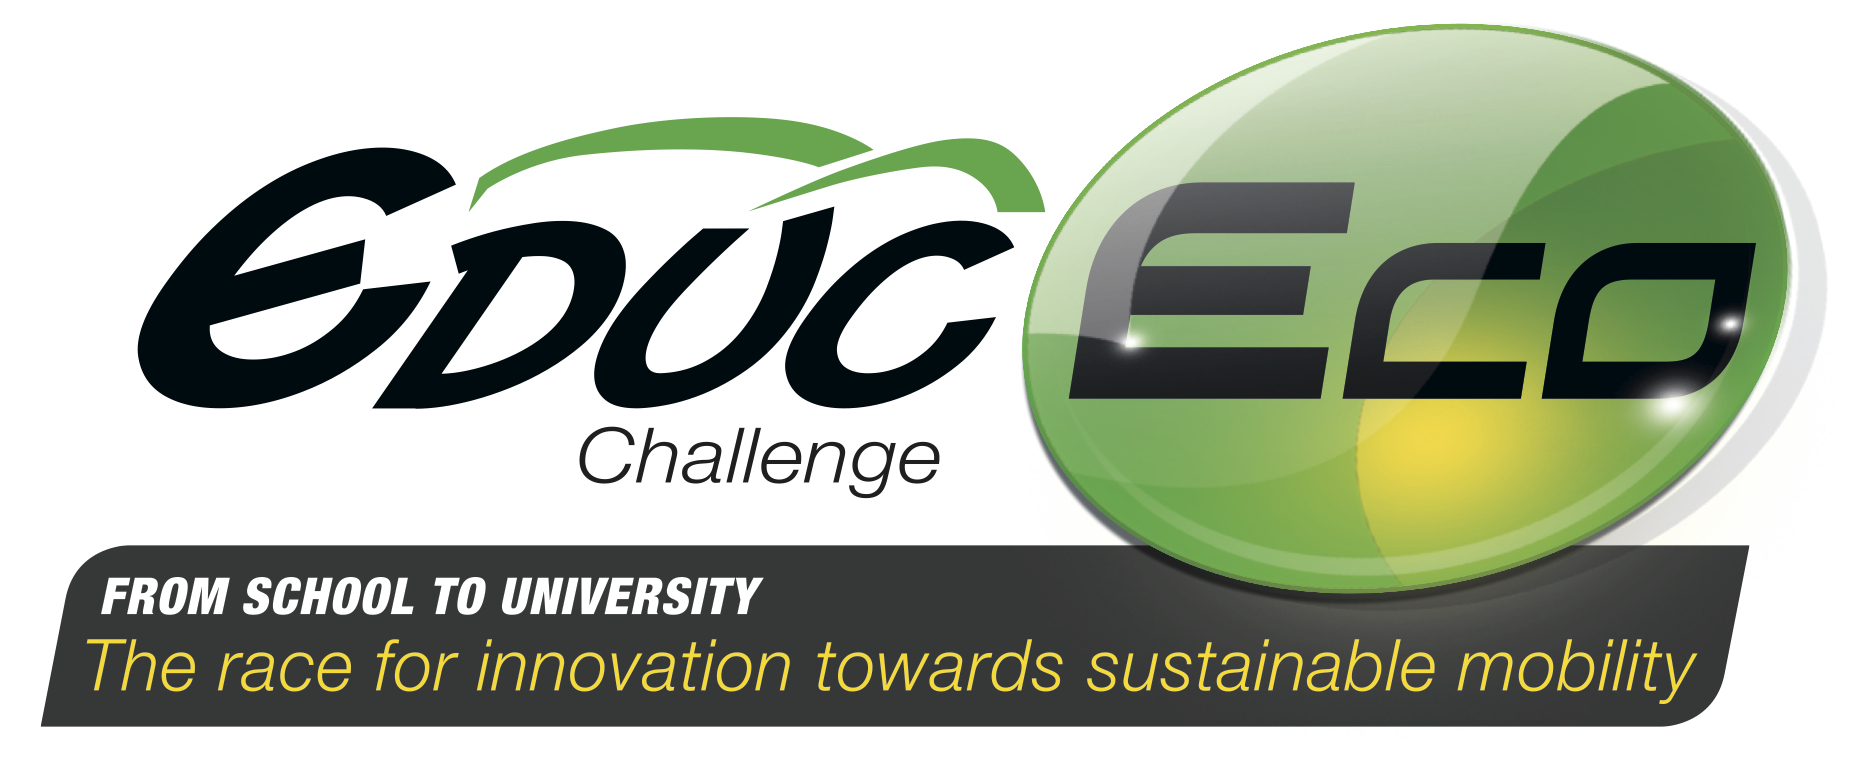 Datakit aide des étudiants à concevoir un véhicule innovant pour le challenge EducEco